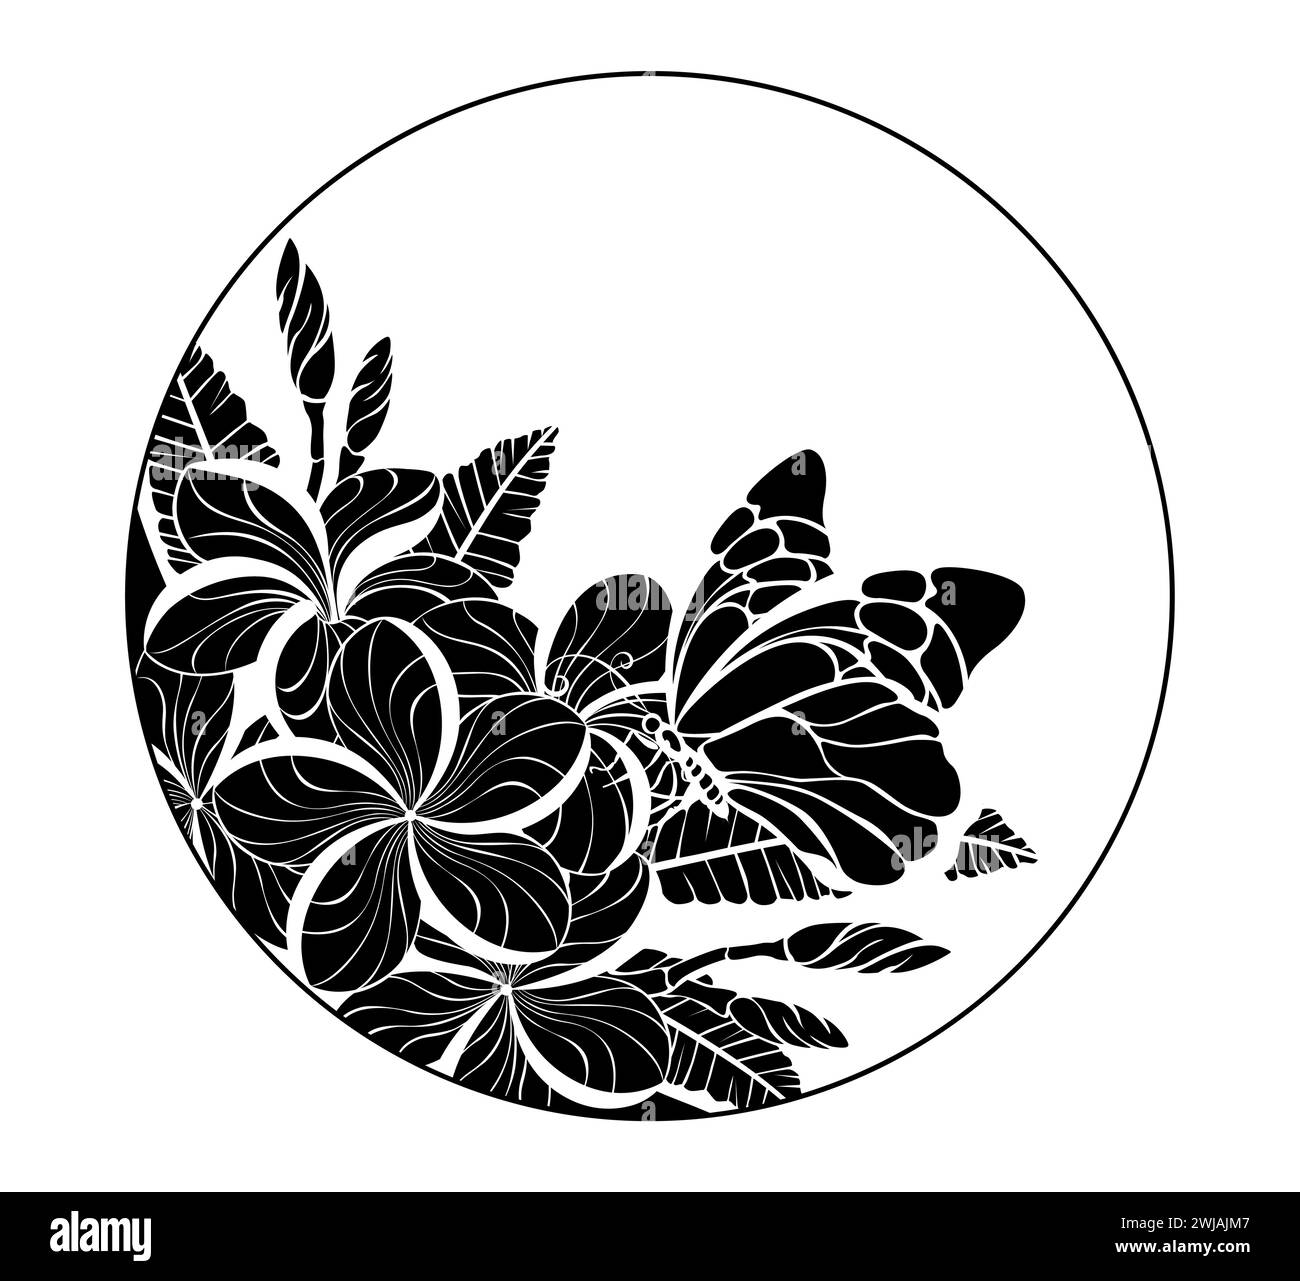 Monogramma rotondo con una farfalla sagomata e disegnata artisticamente, seduta su plumeria esotica in fiore. Silhouette plumeria. Illustrazione Vettoriale